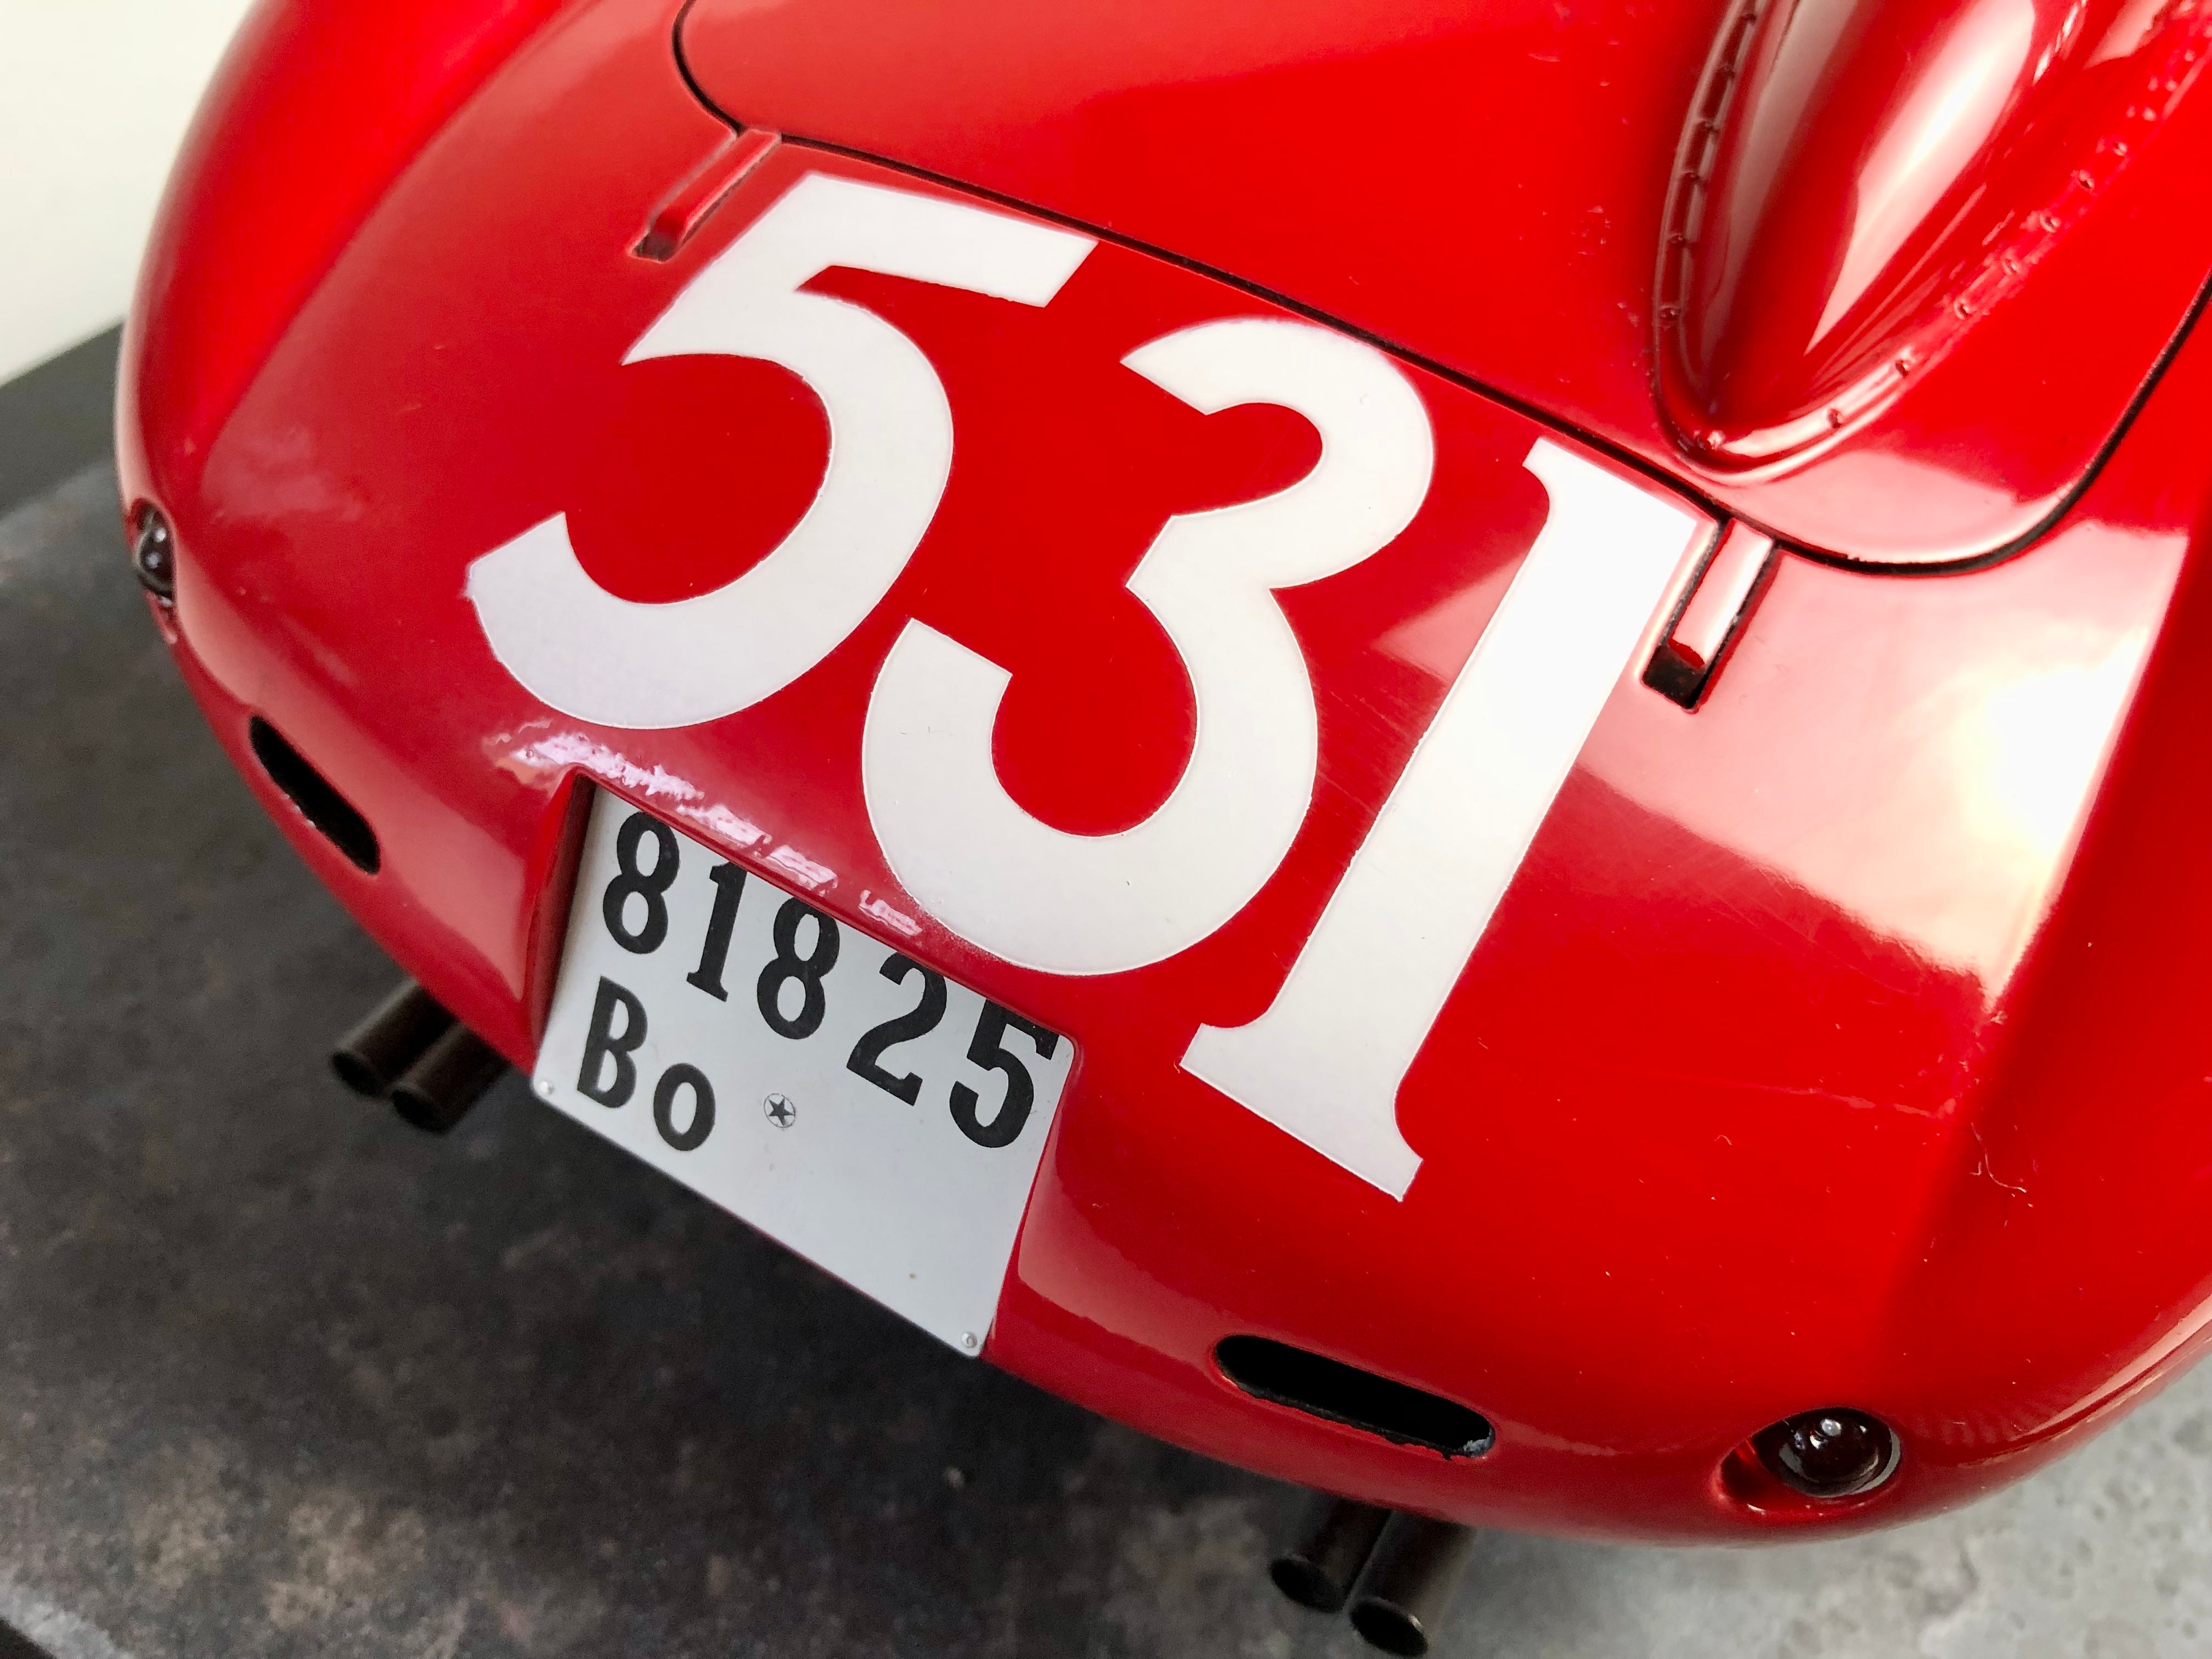 Patrice de Conto 1:8 scale Ferrari 335S 1957 Mille Miglia